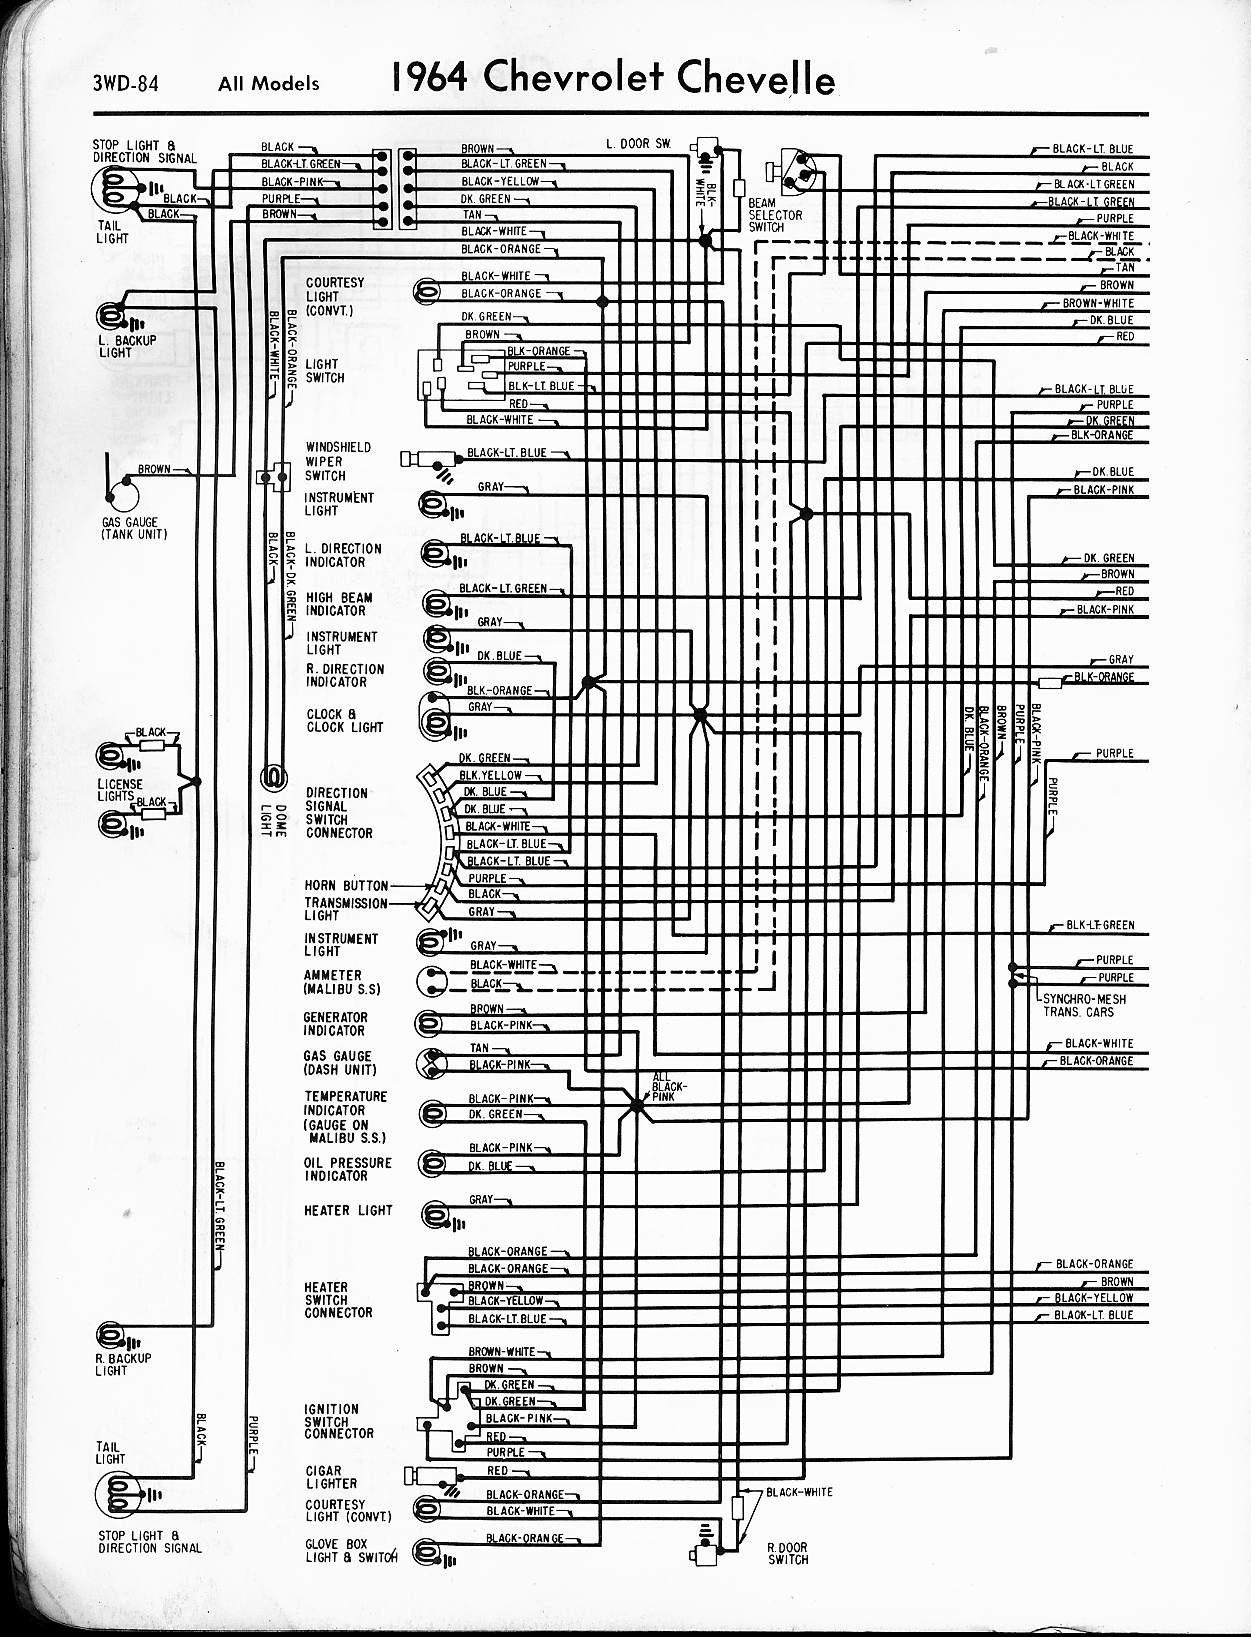 1967 Camaro Wiring Diagram 1967 Chevelle Dash Wiring Diagram Wiring Info • Of 1967 Camaro Wiring Diagram